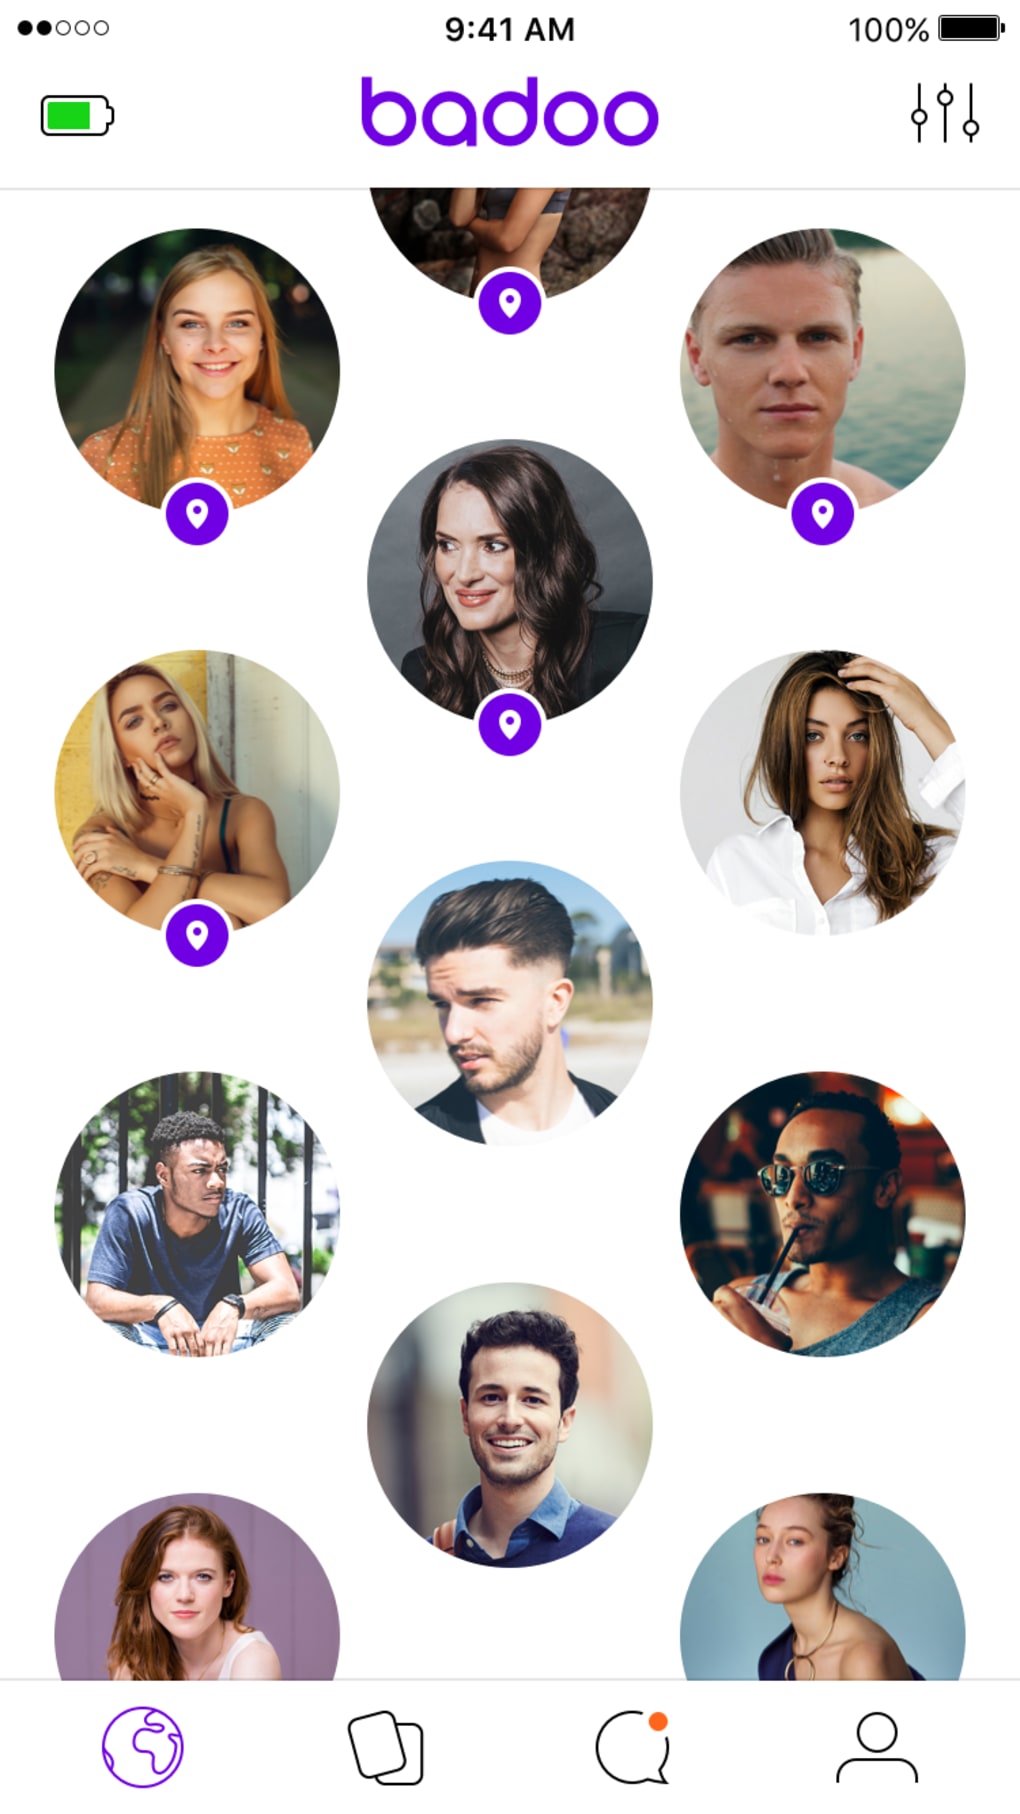 Descarcă Badoo - Dating și chat gratuit APK Android pentru gratuit - newvisionromania.ro